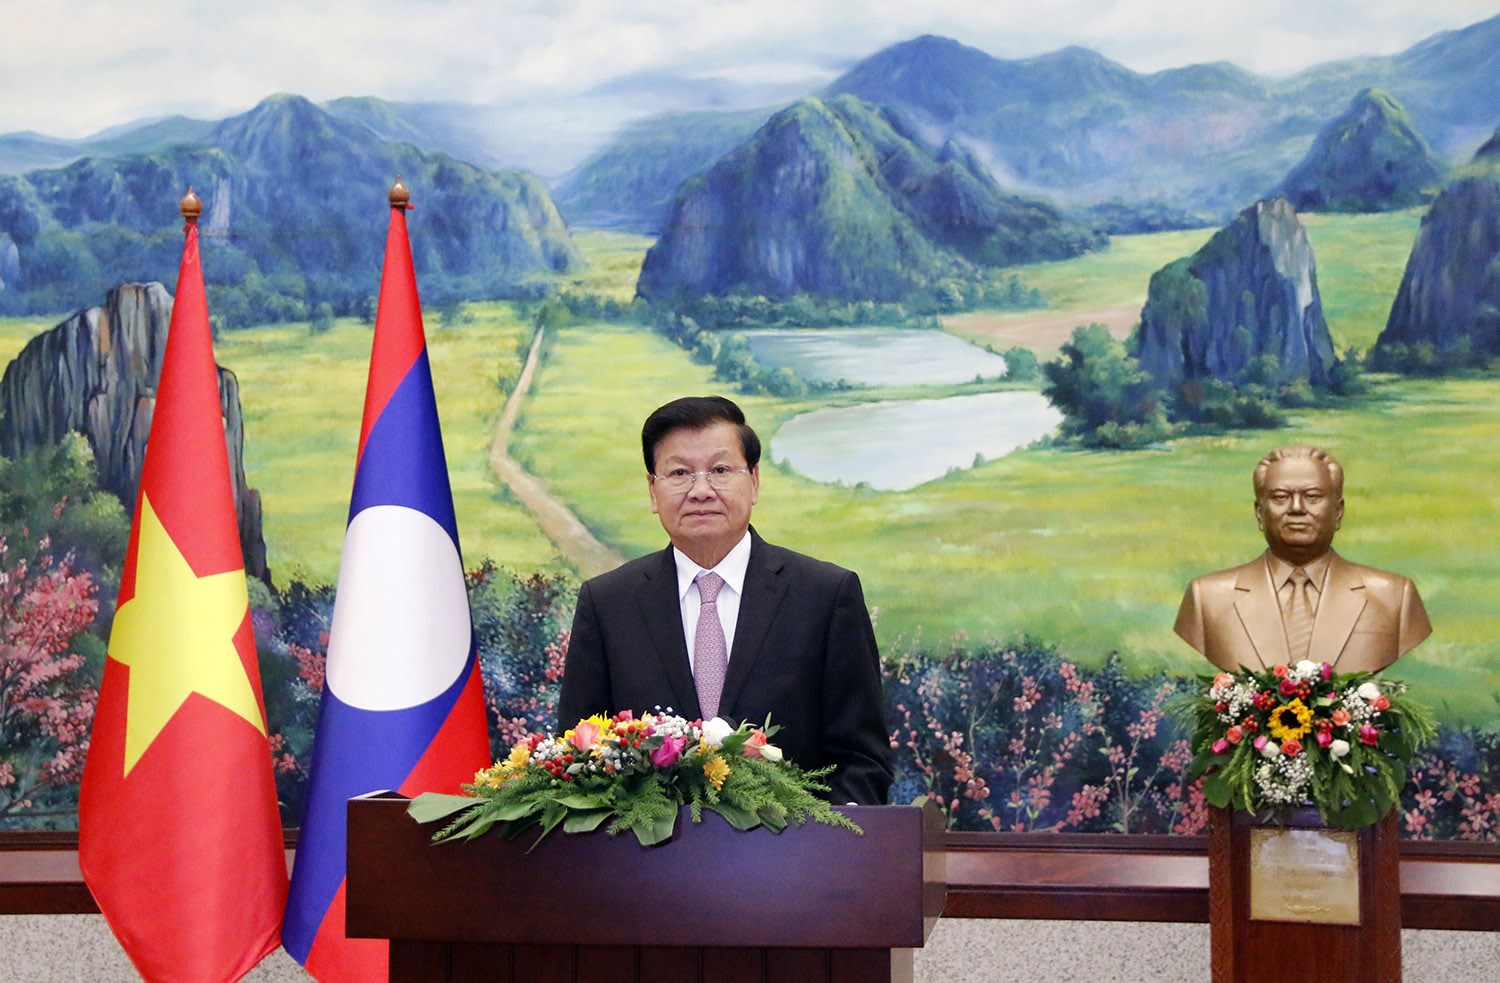 Ra sức vun đắp mối quan hệ đặc biệt Lào - Việt Nam không ngừng đơm hoa kết trái